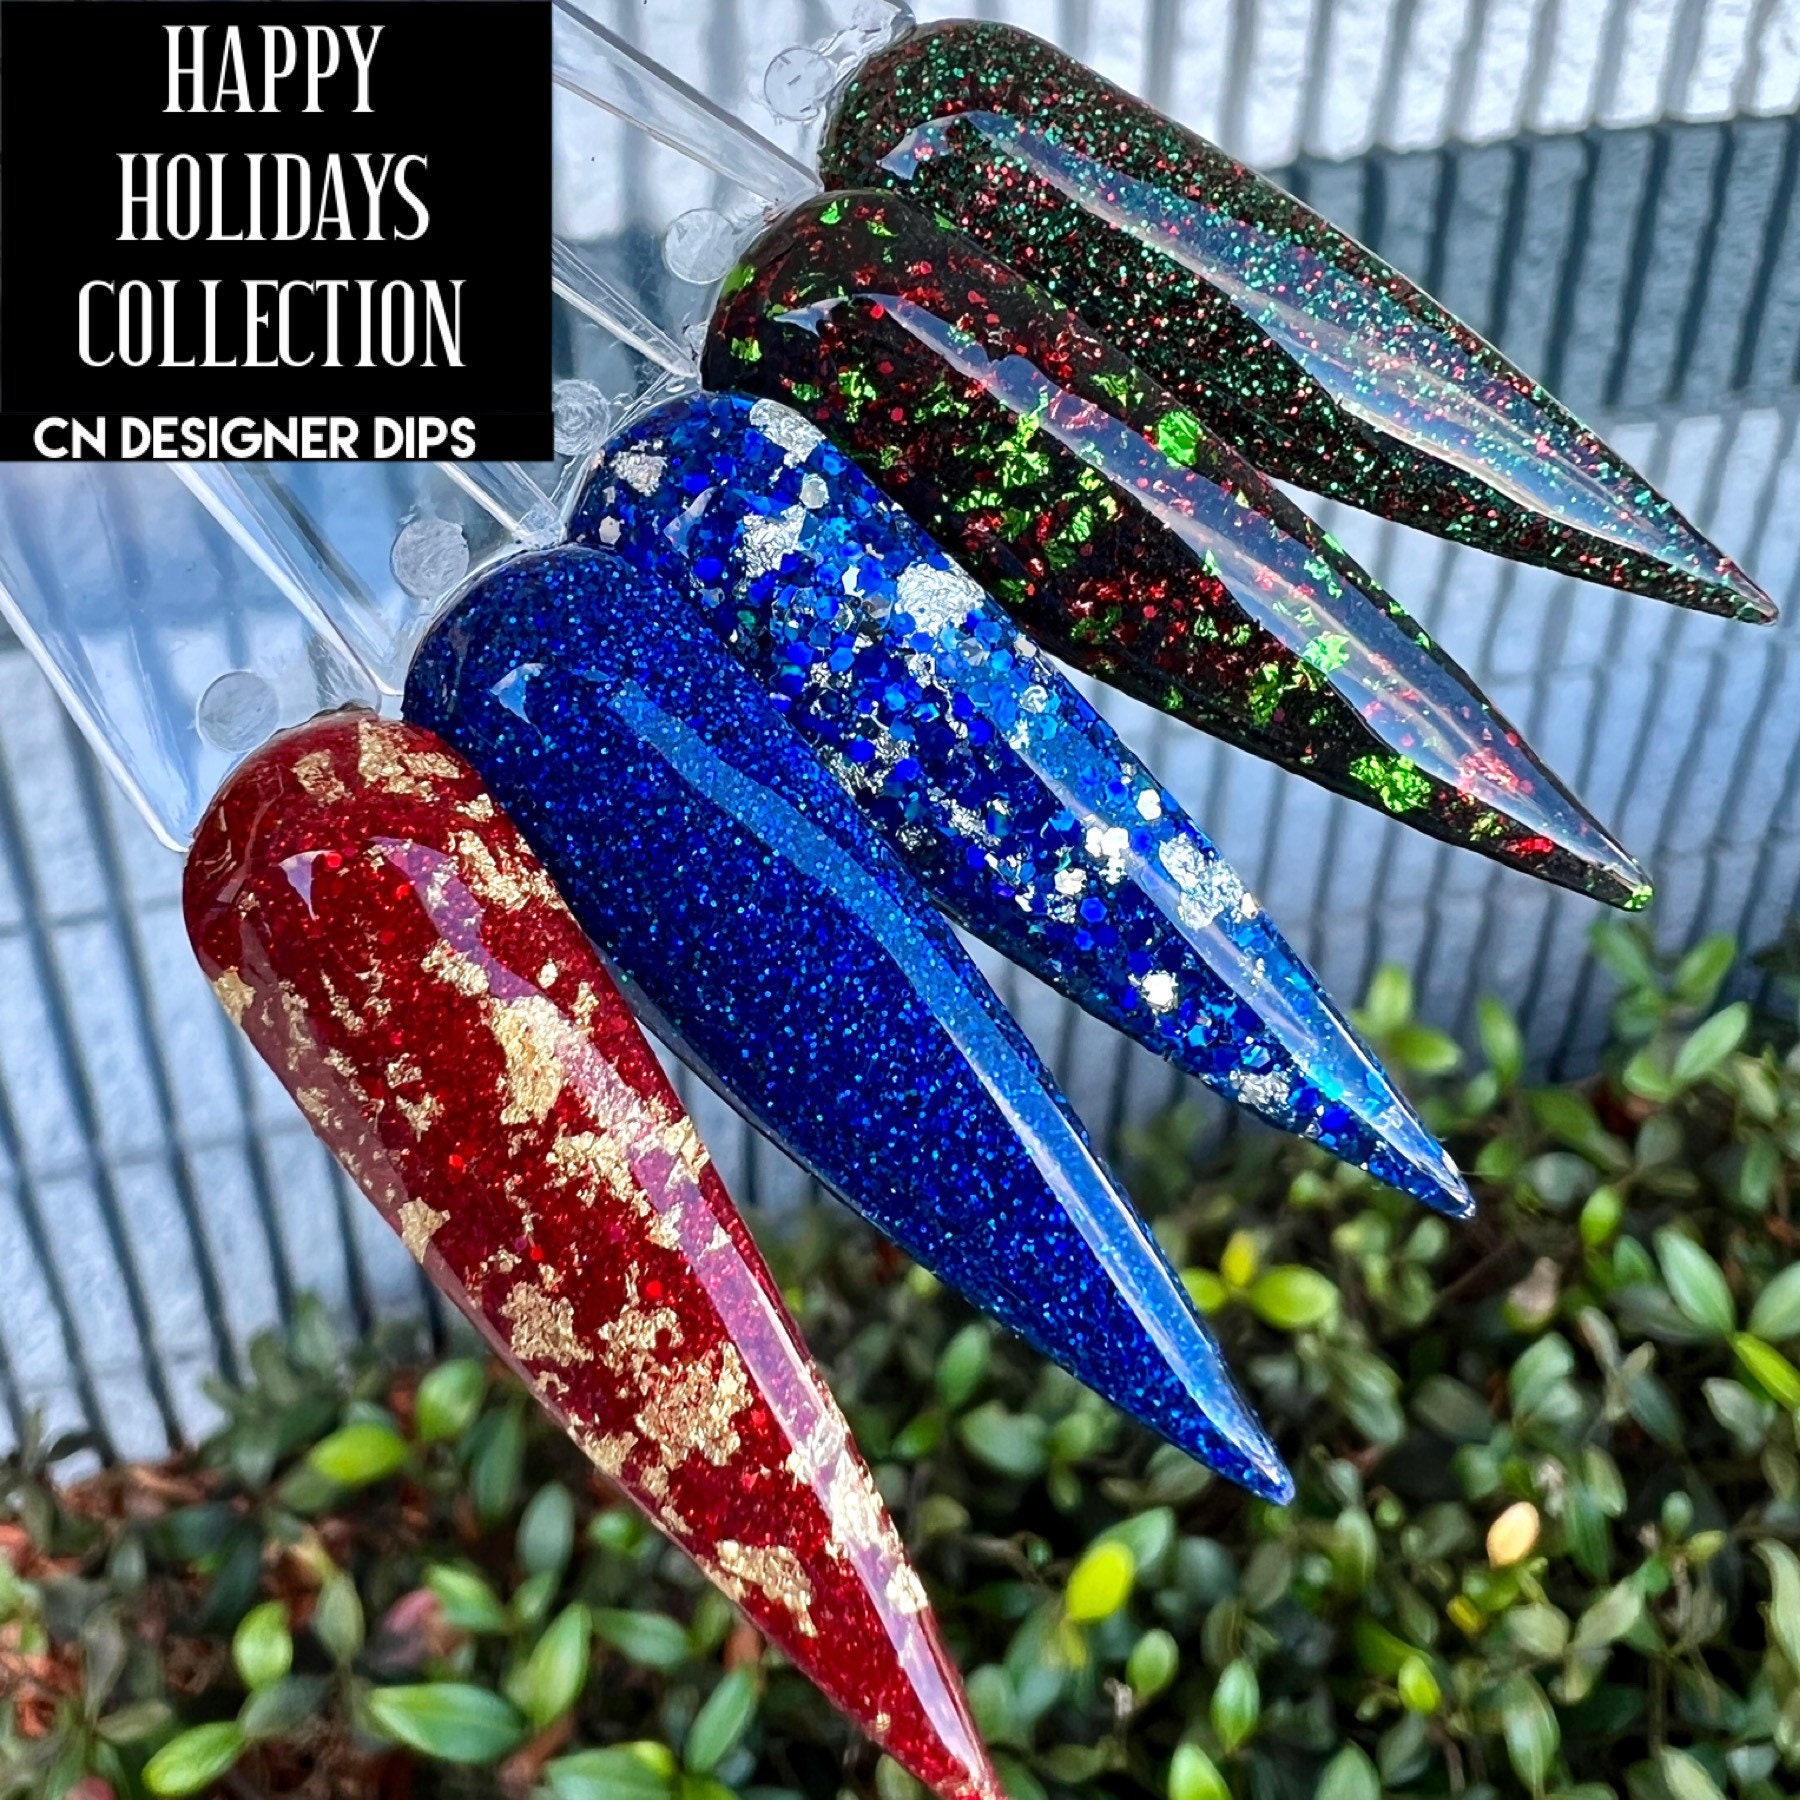 Happy Holidays Collection - Tauchpulver, Tauchpulver Für Nägel, Nagel Acryl, Acrylpuder, Acrylfarben, Urlaub, Nagel, Dip von Etsy - CNDesignerDips